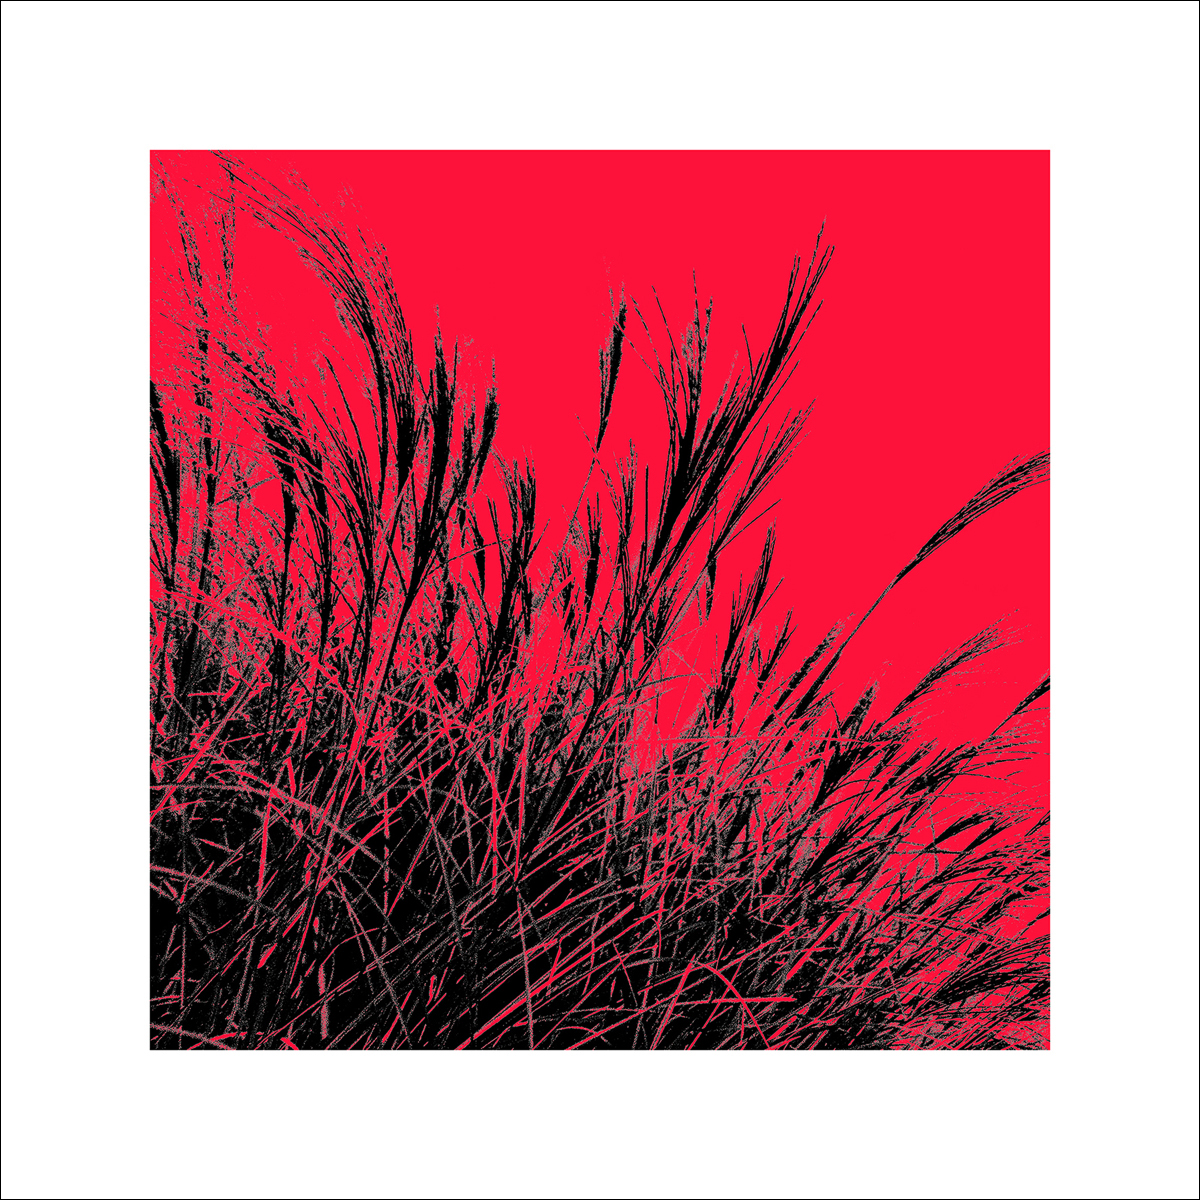 Polla D.: Grass (red), 2011 ZG